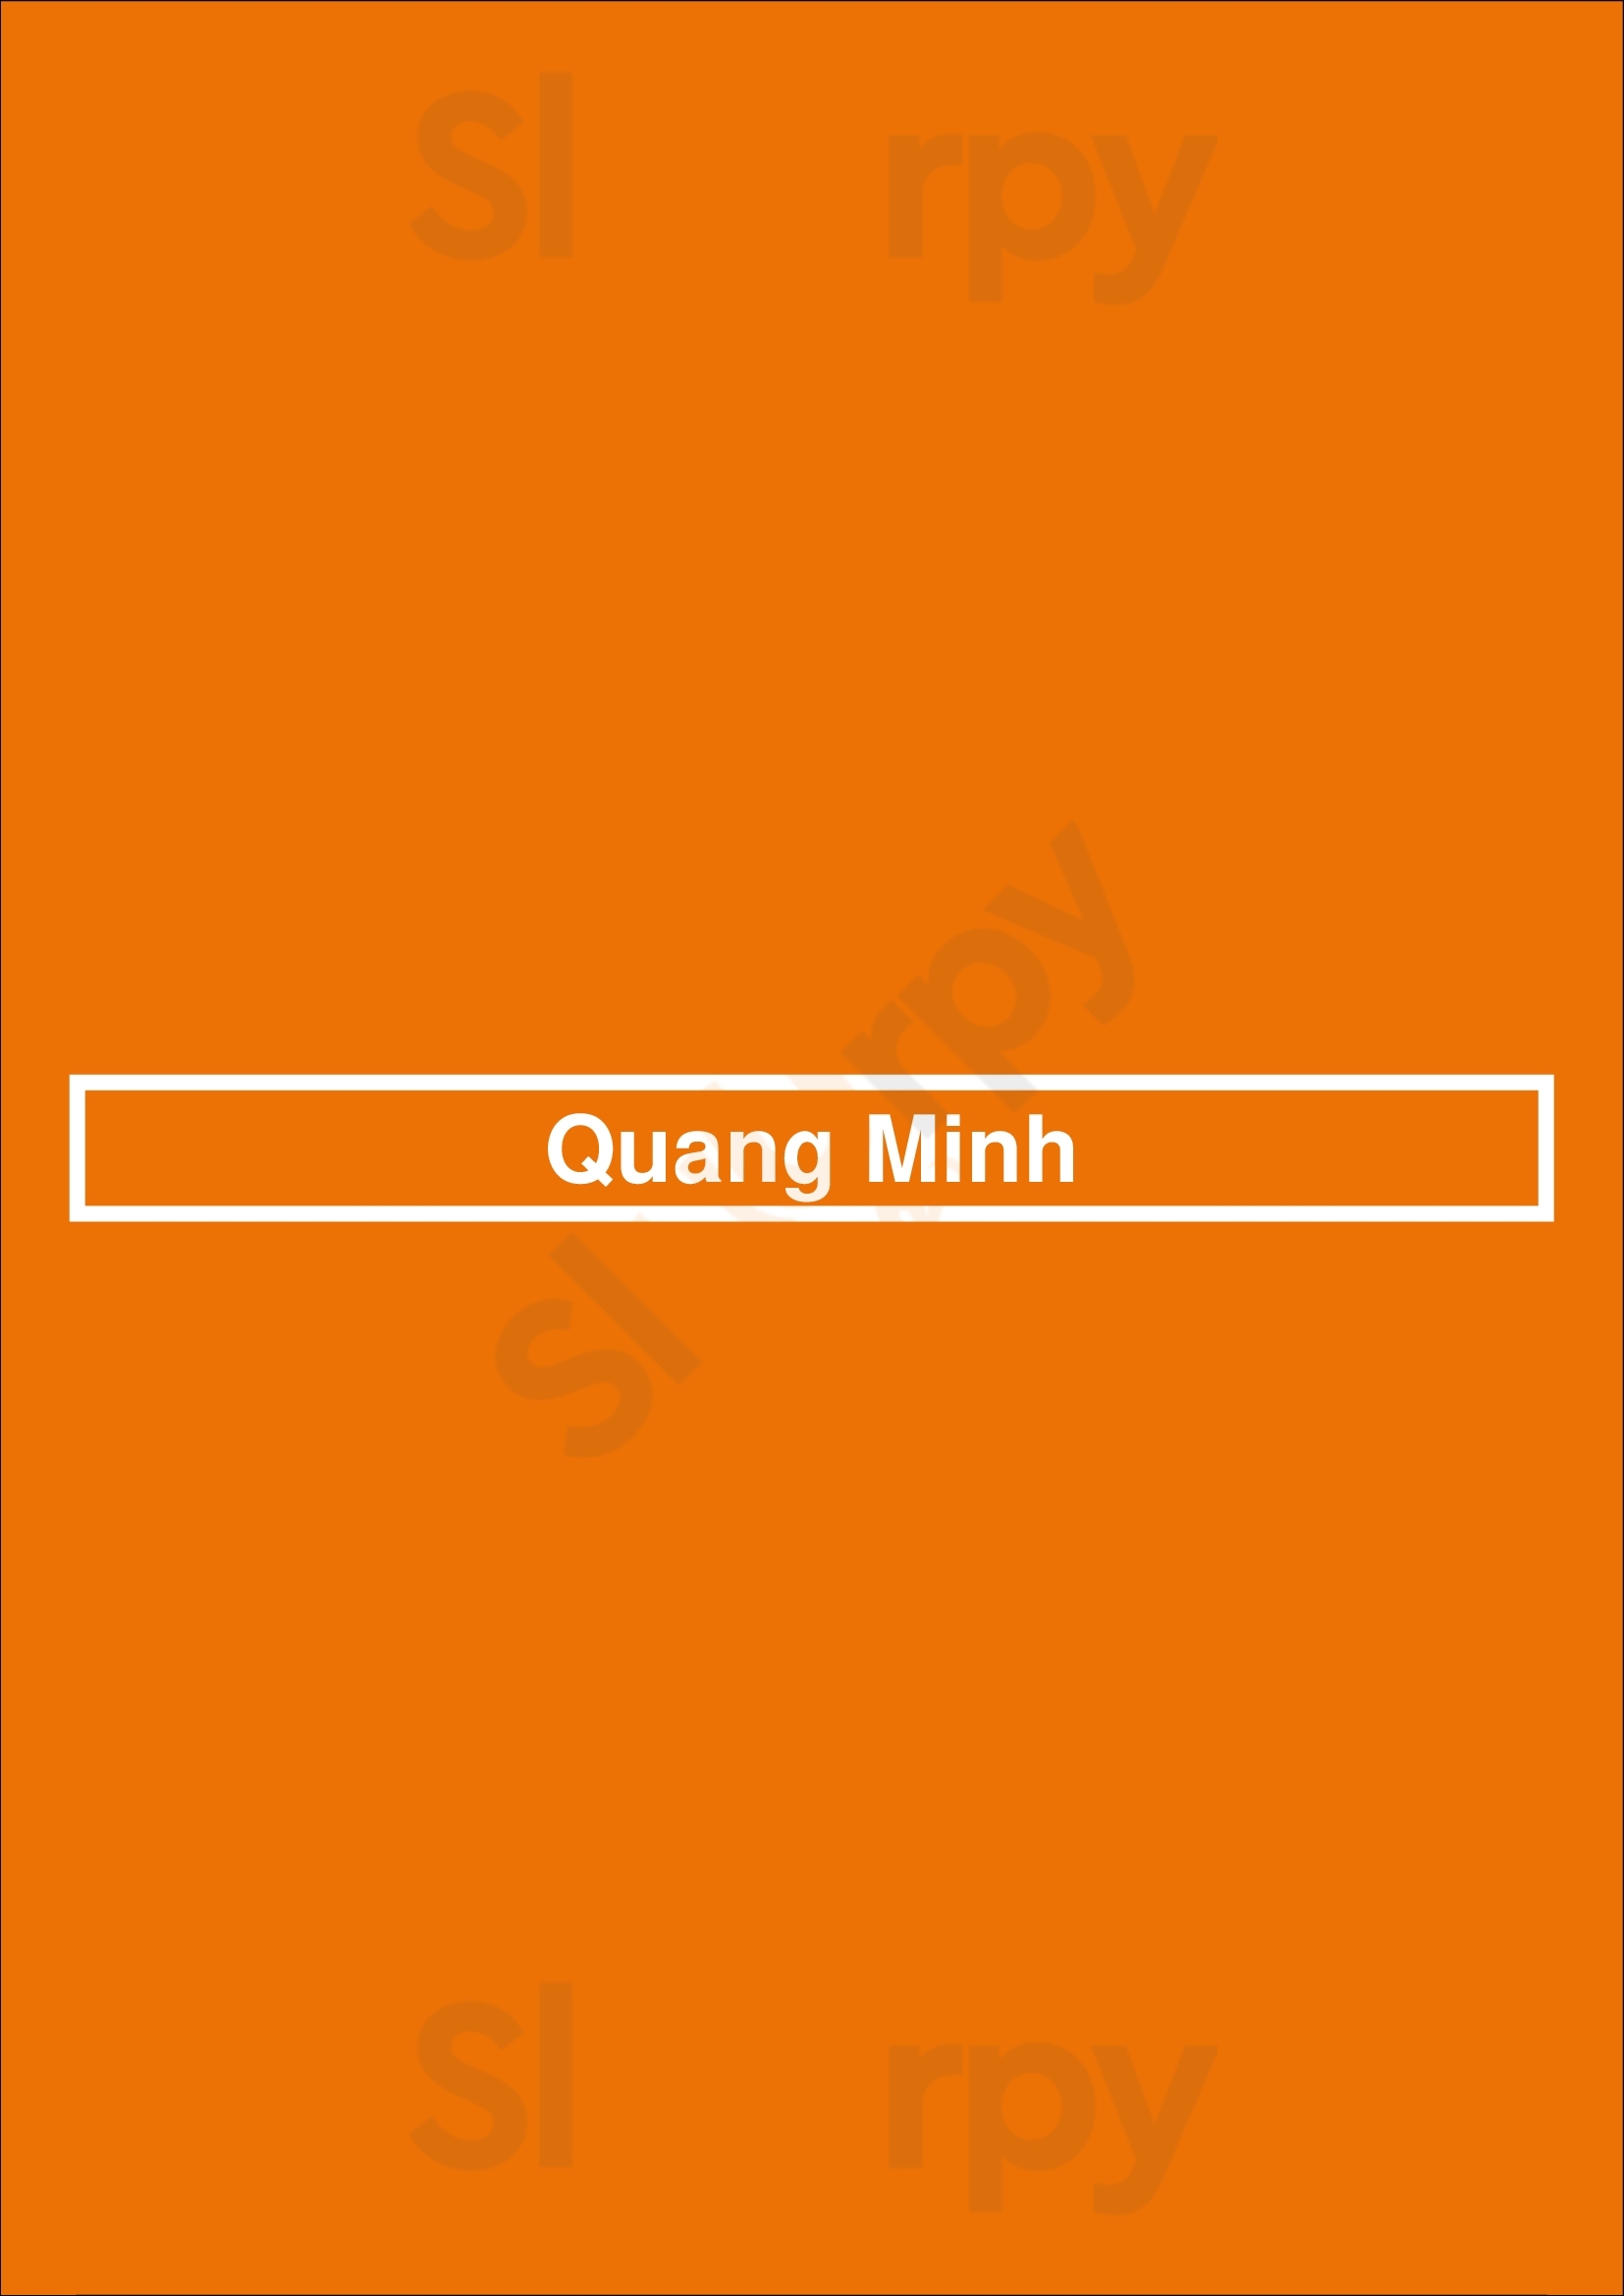 Quang Minh Utrecht Menu - 1